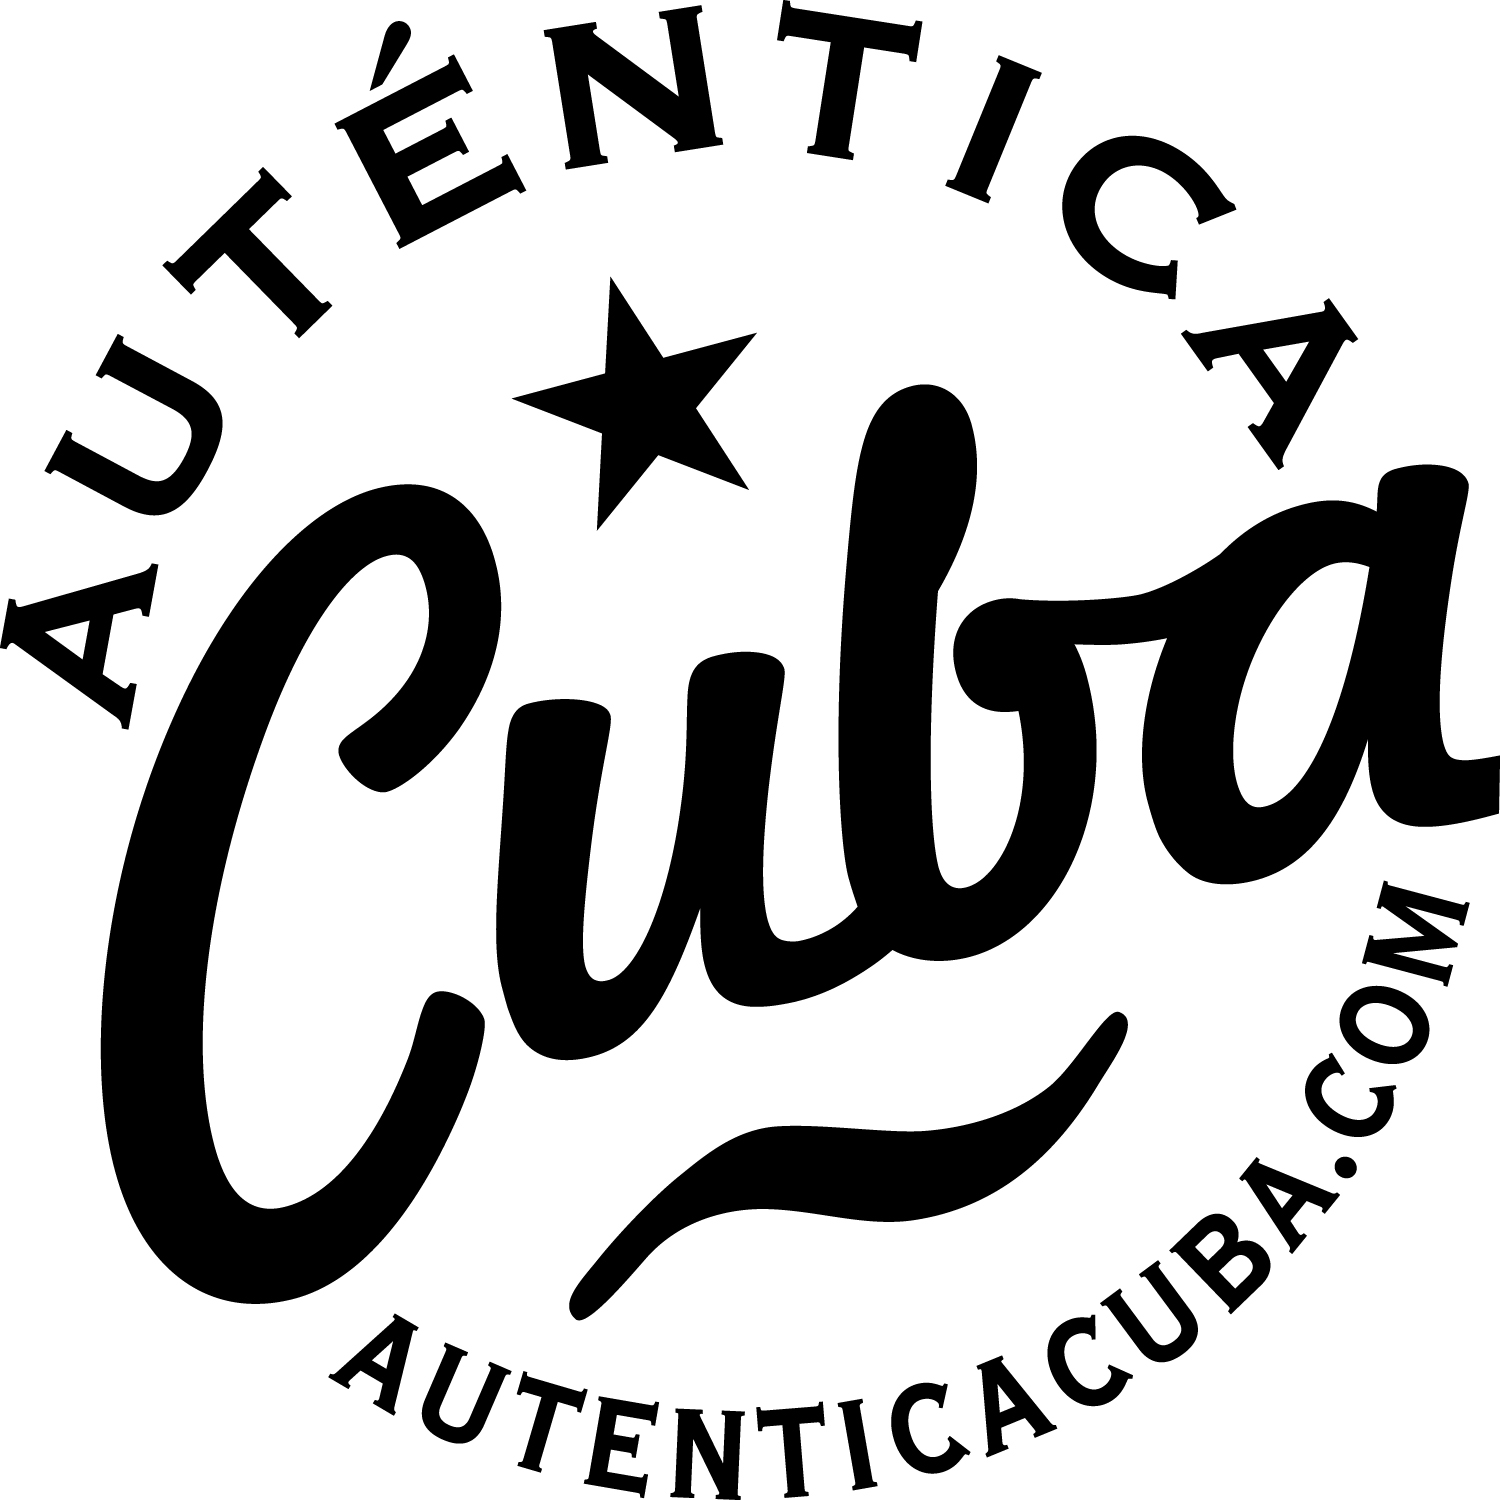 Autentica Cuba_WORK_2_BLK